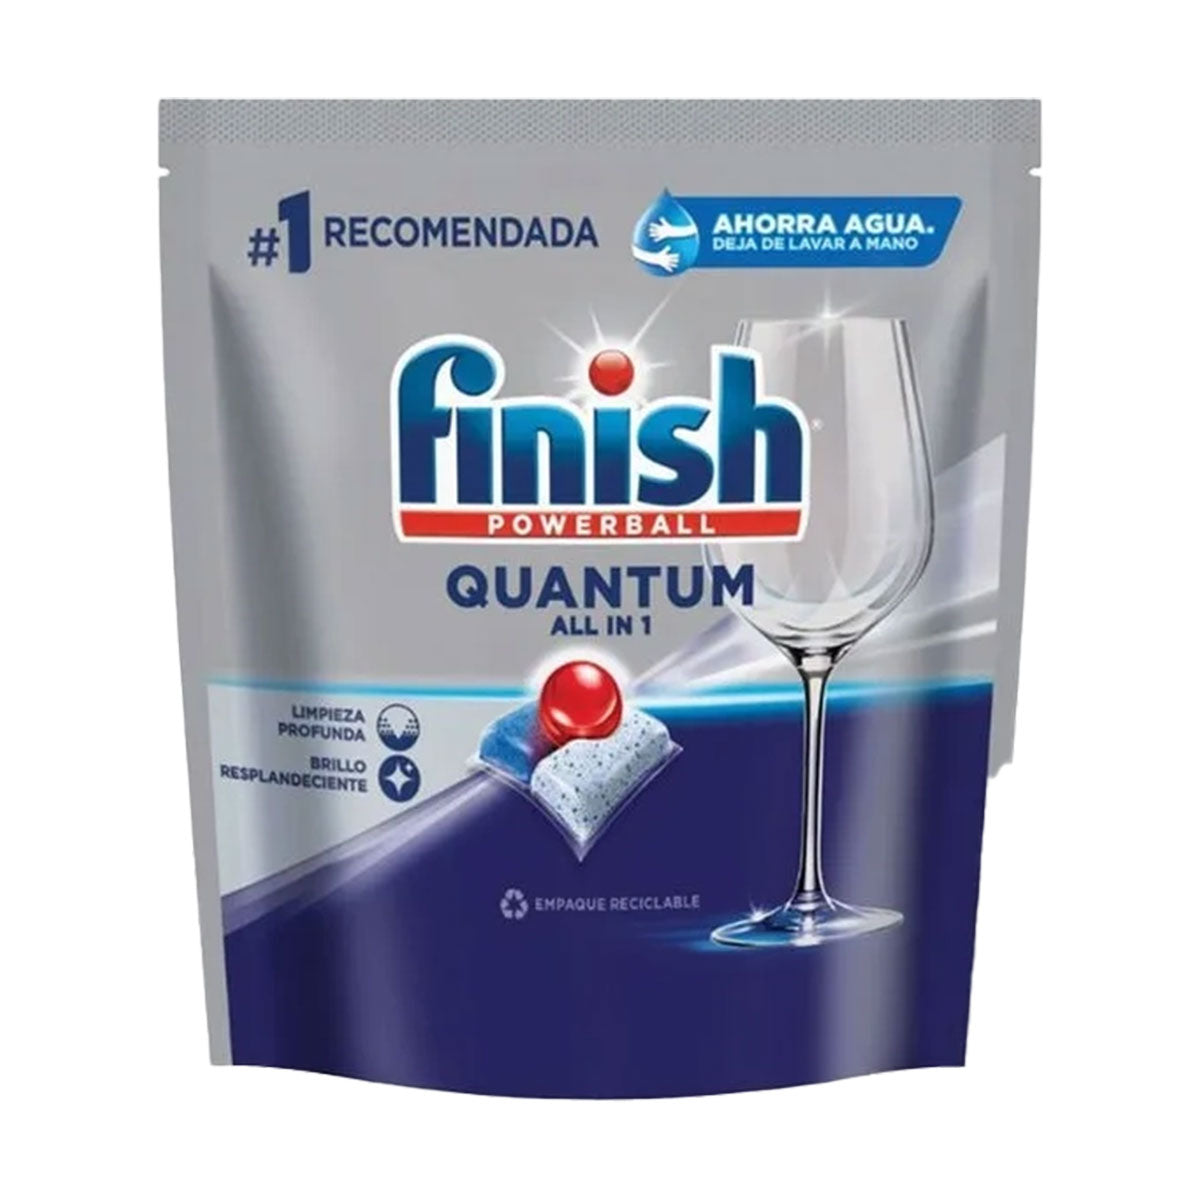 Detergente lavavajillas en Tabletas Powerball Quantum All in 1 Finish (15 unidades)